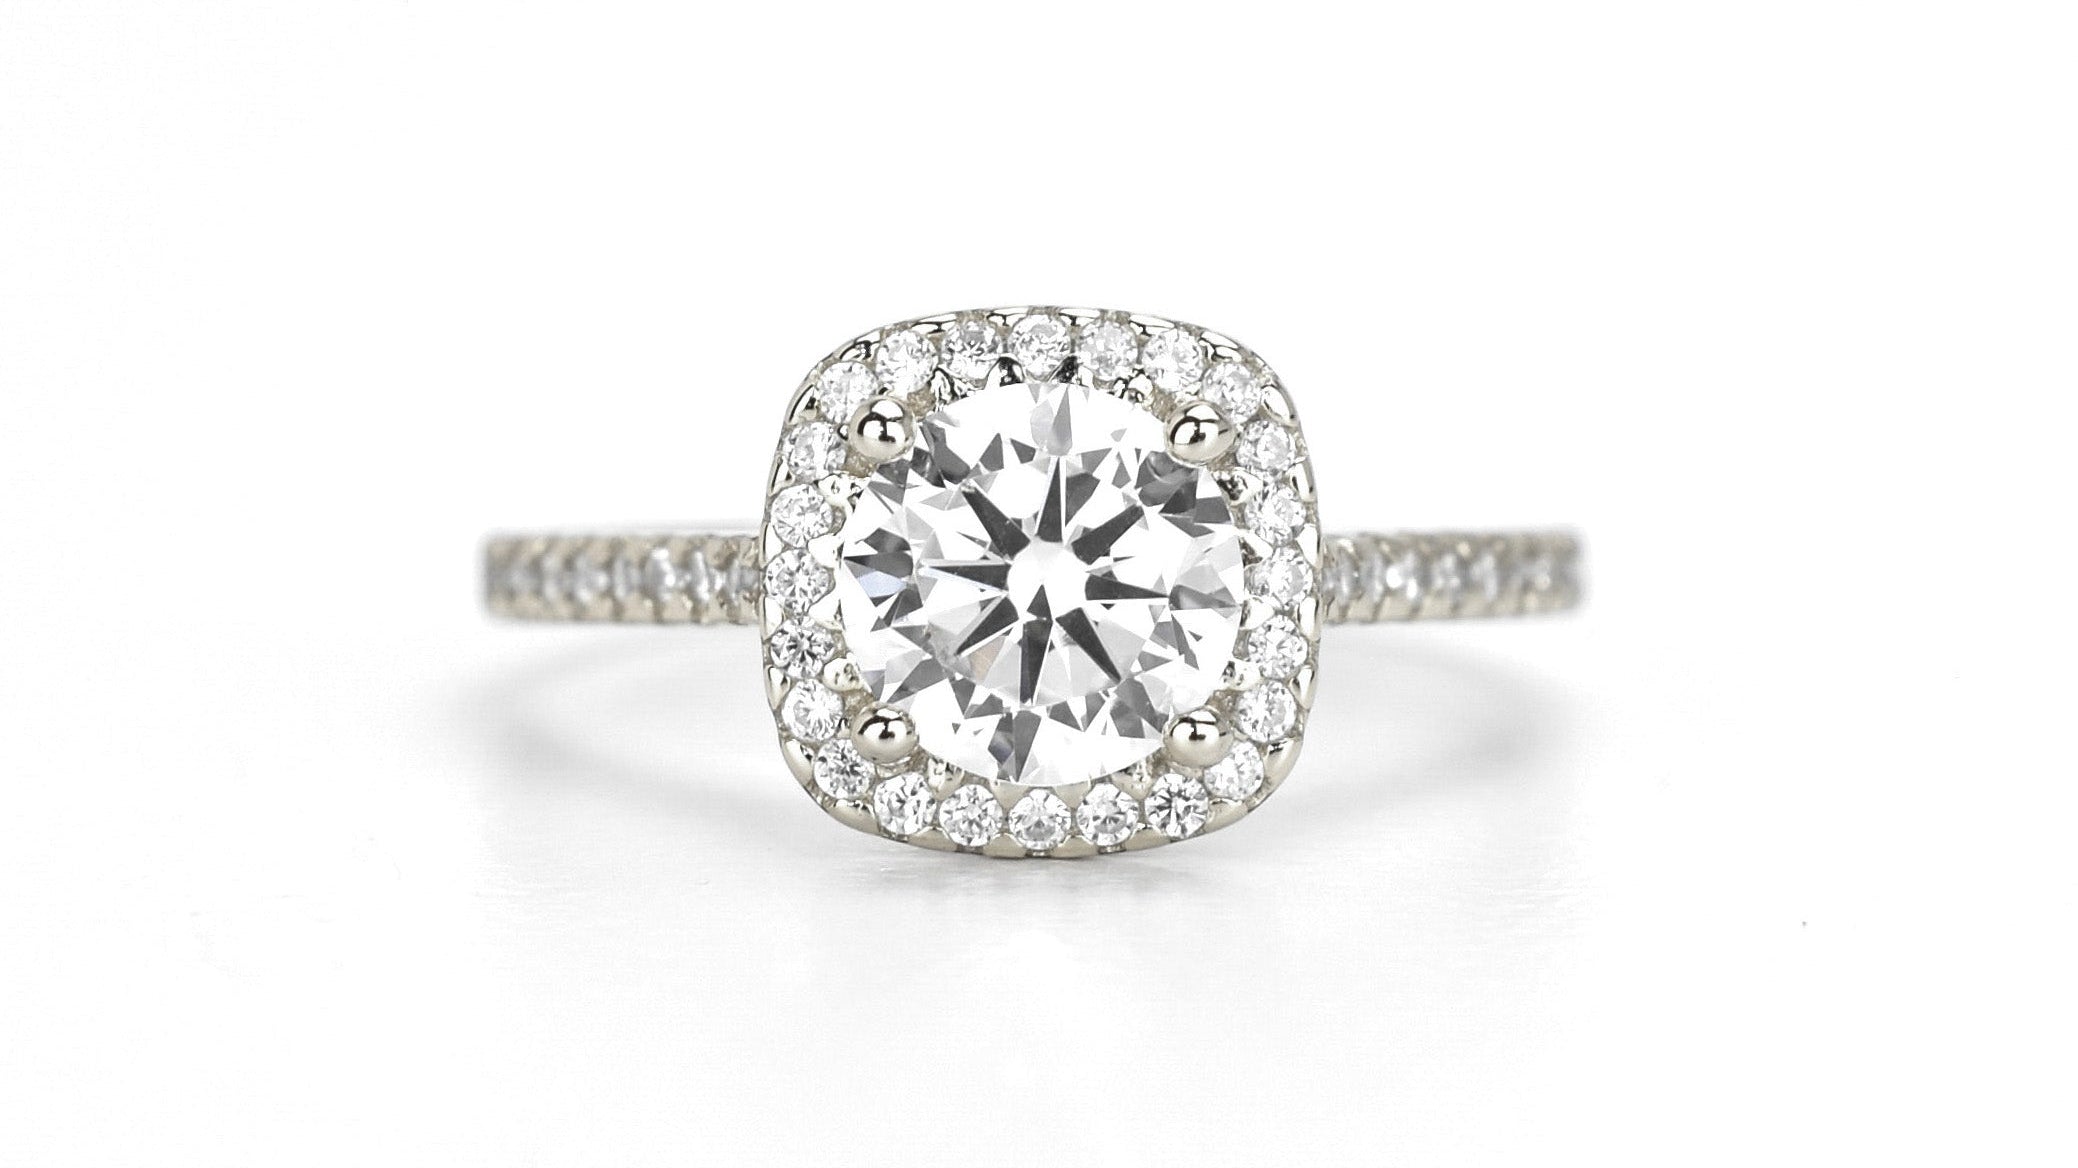 Zilveren halo ring, vierkante halo ring, verlovingsring, ring diamant, 925 zilveren ring, cadeau voor haar, ring met stenen, stapelring zilver, verona, bemyjewels